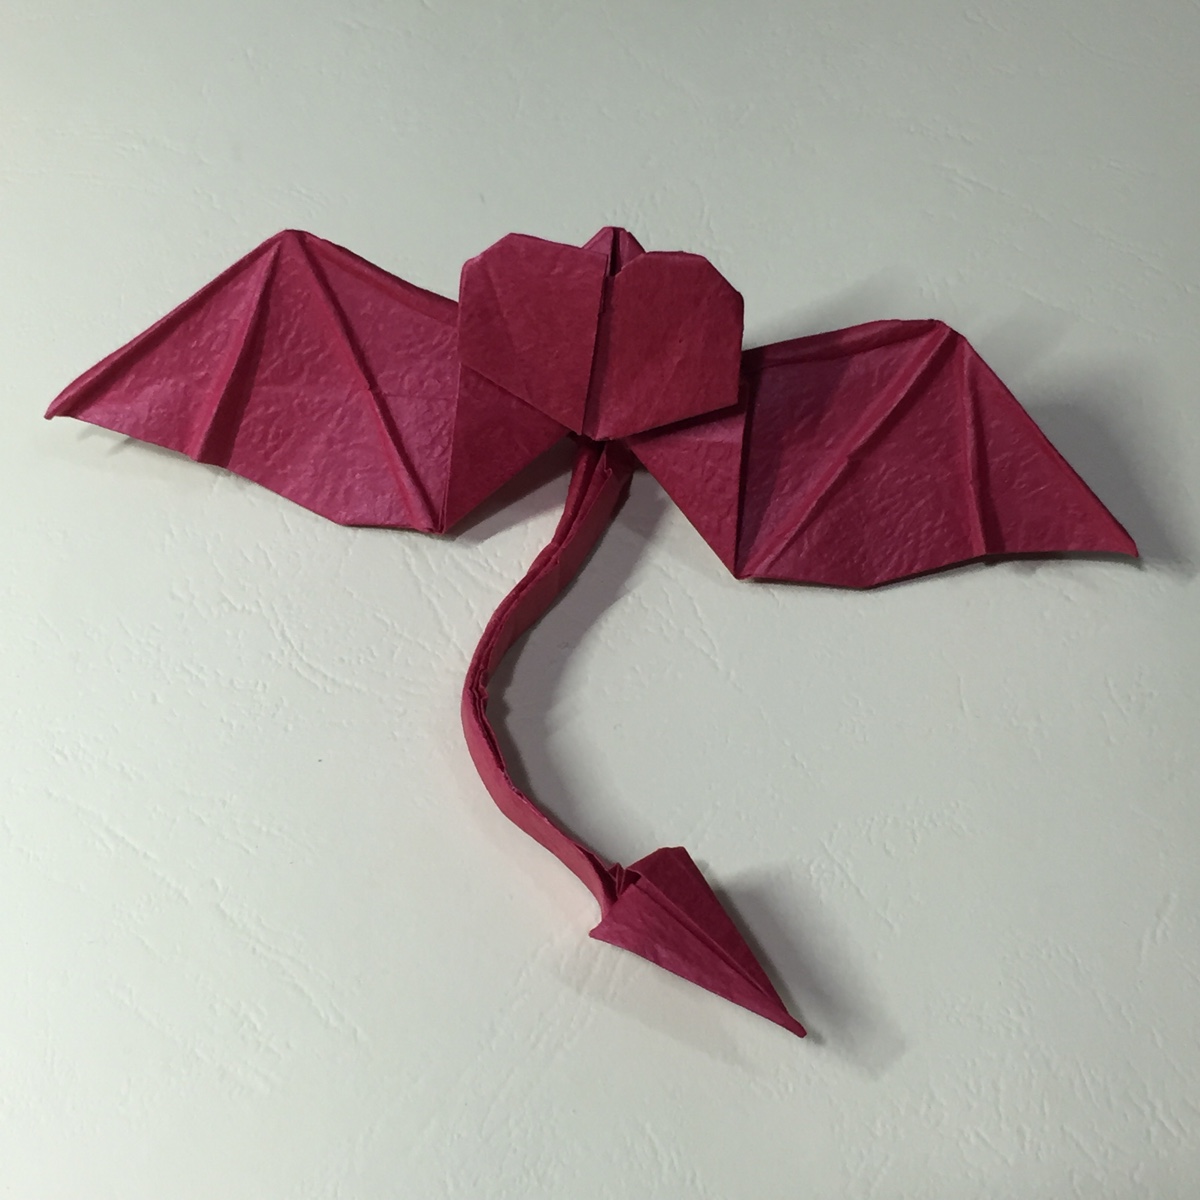 恶魔心折纸仿作(想学的同学百度"图老师带翅膀恶魔心折纸"就可以找到